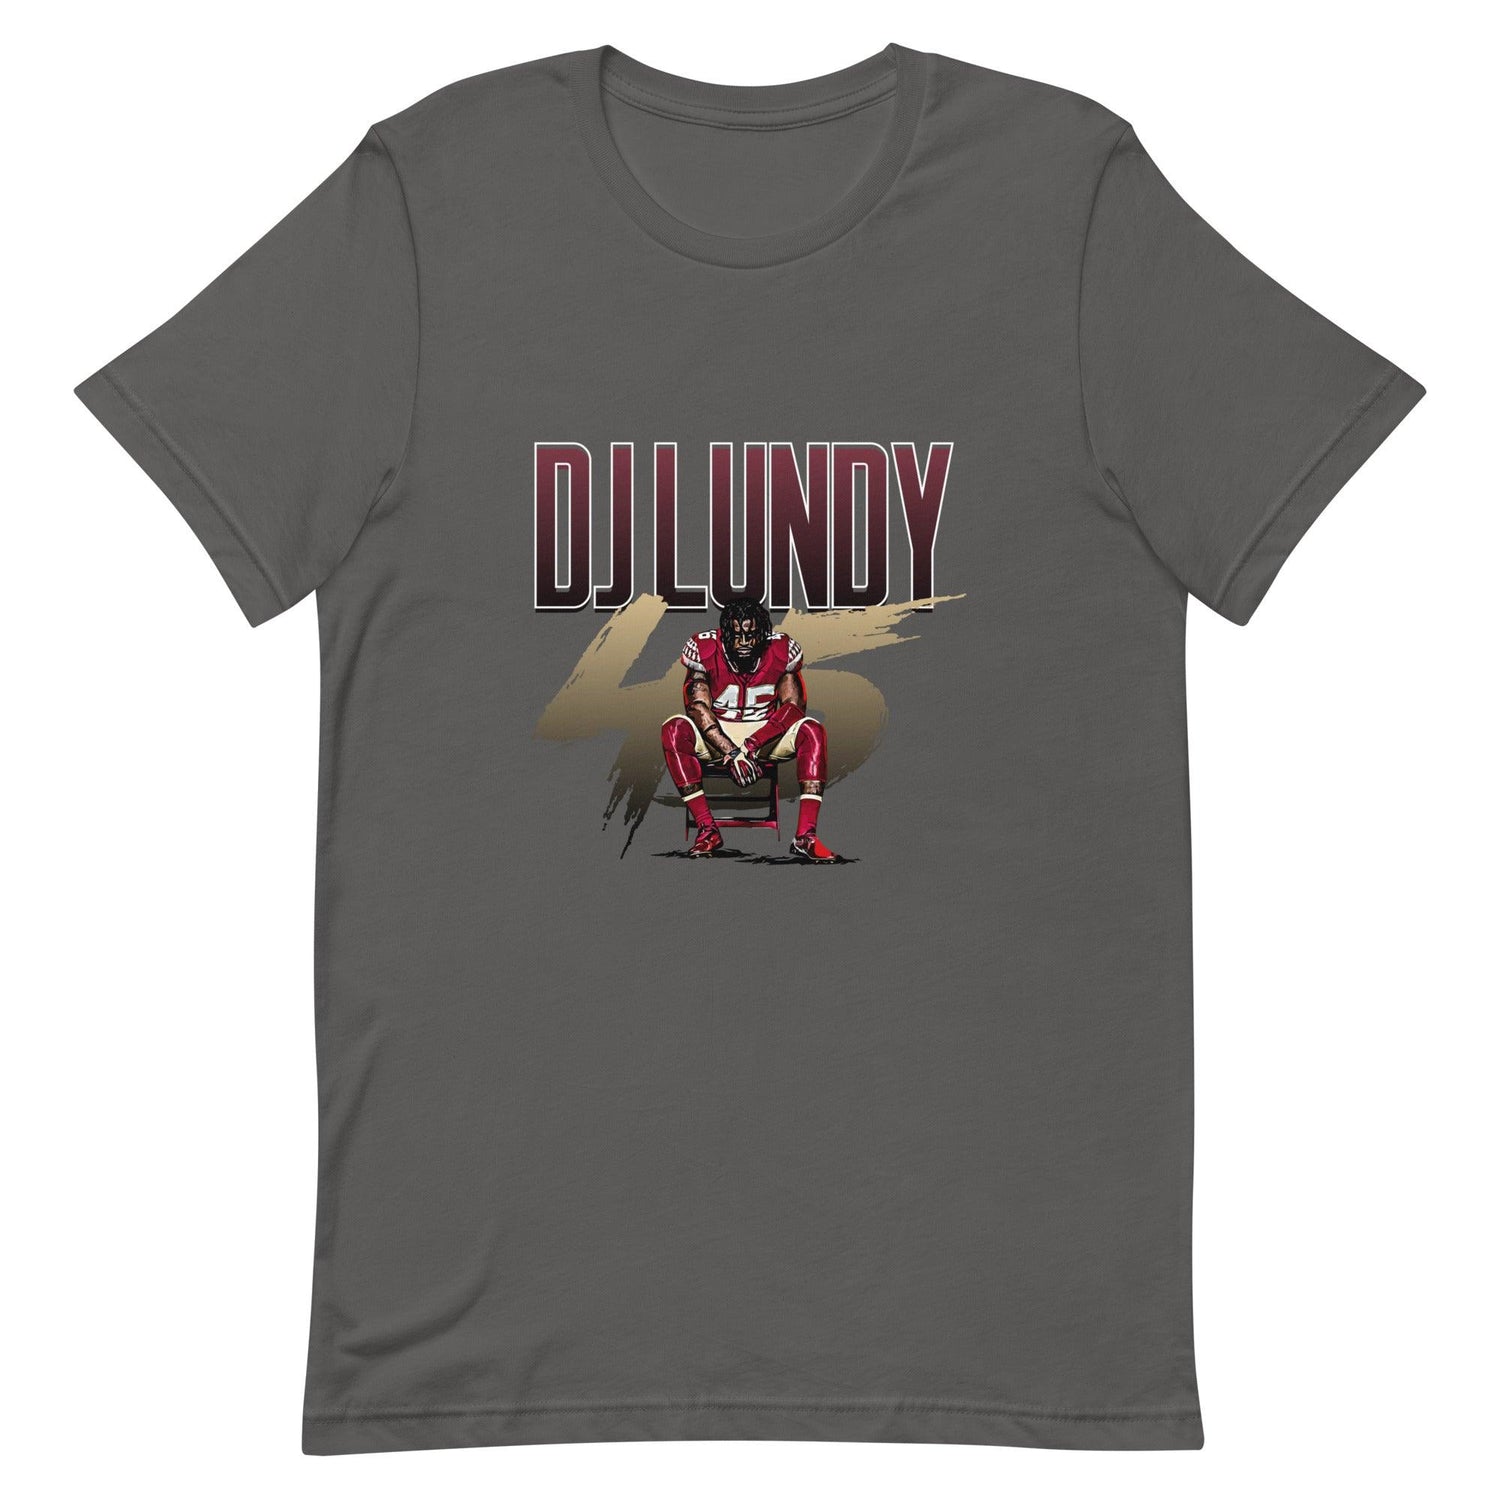 DJ Lundy "Gameday" t-shirt - Fan Arch